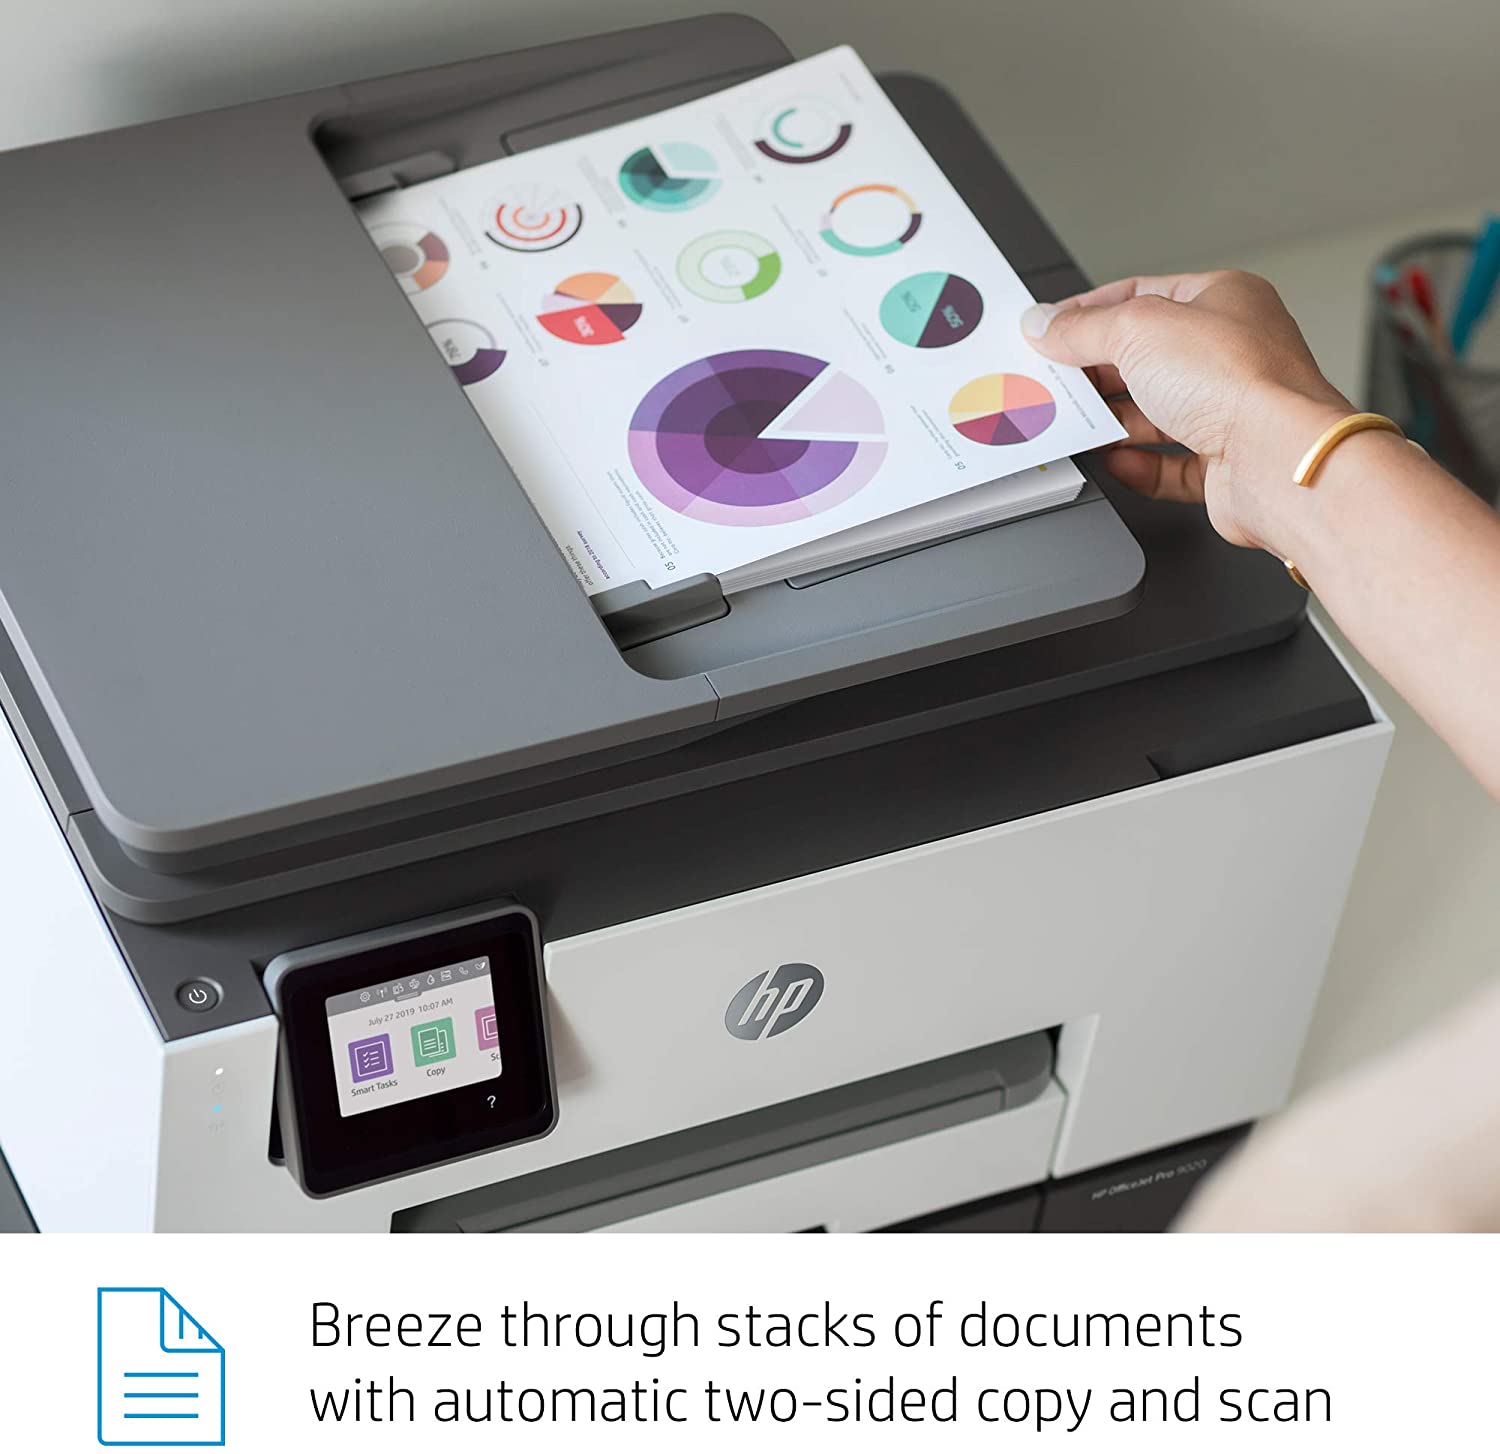 Impresora HP Multifuncion  OfficeJet Pro 9020 imprime, copia, escanea a doble cara de una sola pasada, fax  Adf automatico a doble cara Wifi color 22 ppm negro y 18 ppm color ecotank tinta pigmentada sin chip